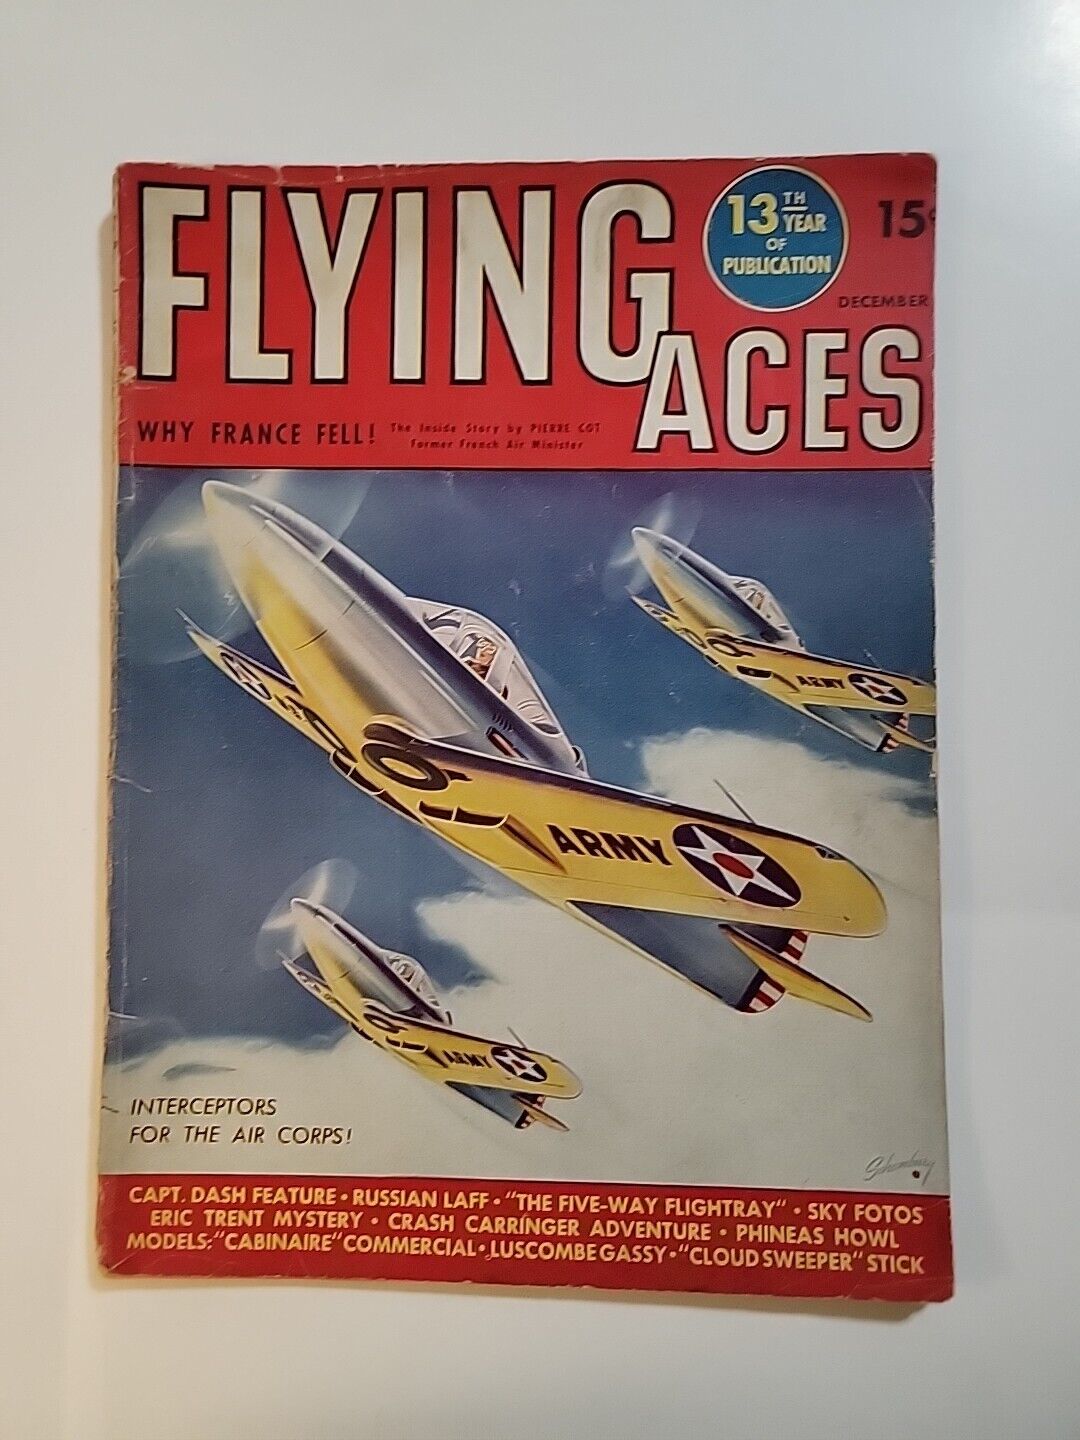 WW2 Flying Aces by A. A. Wyn, Dec 1940